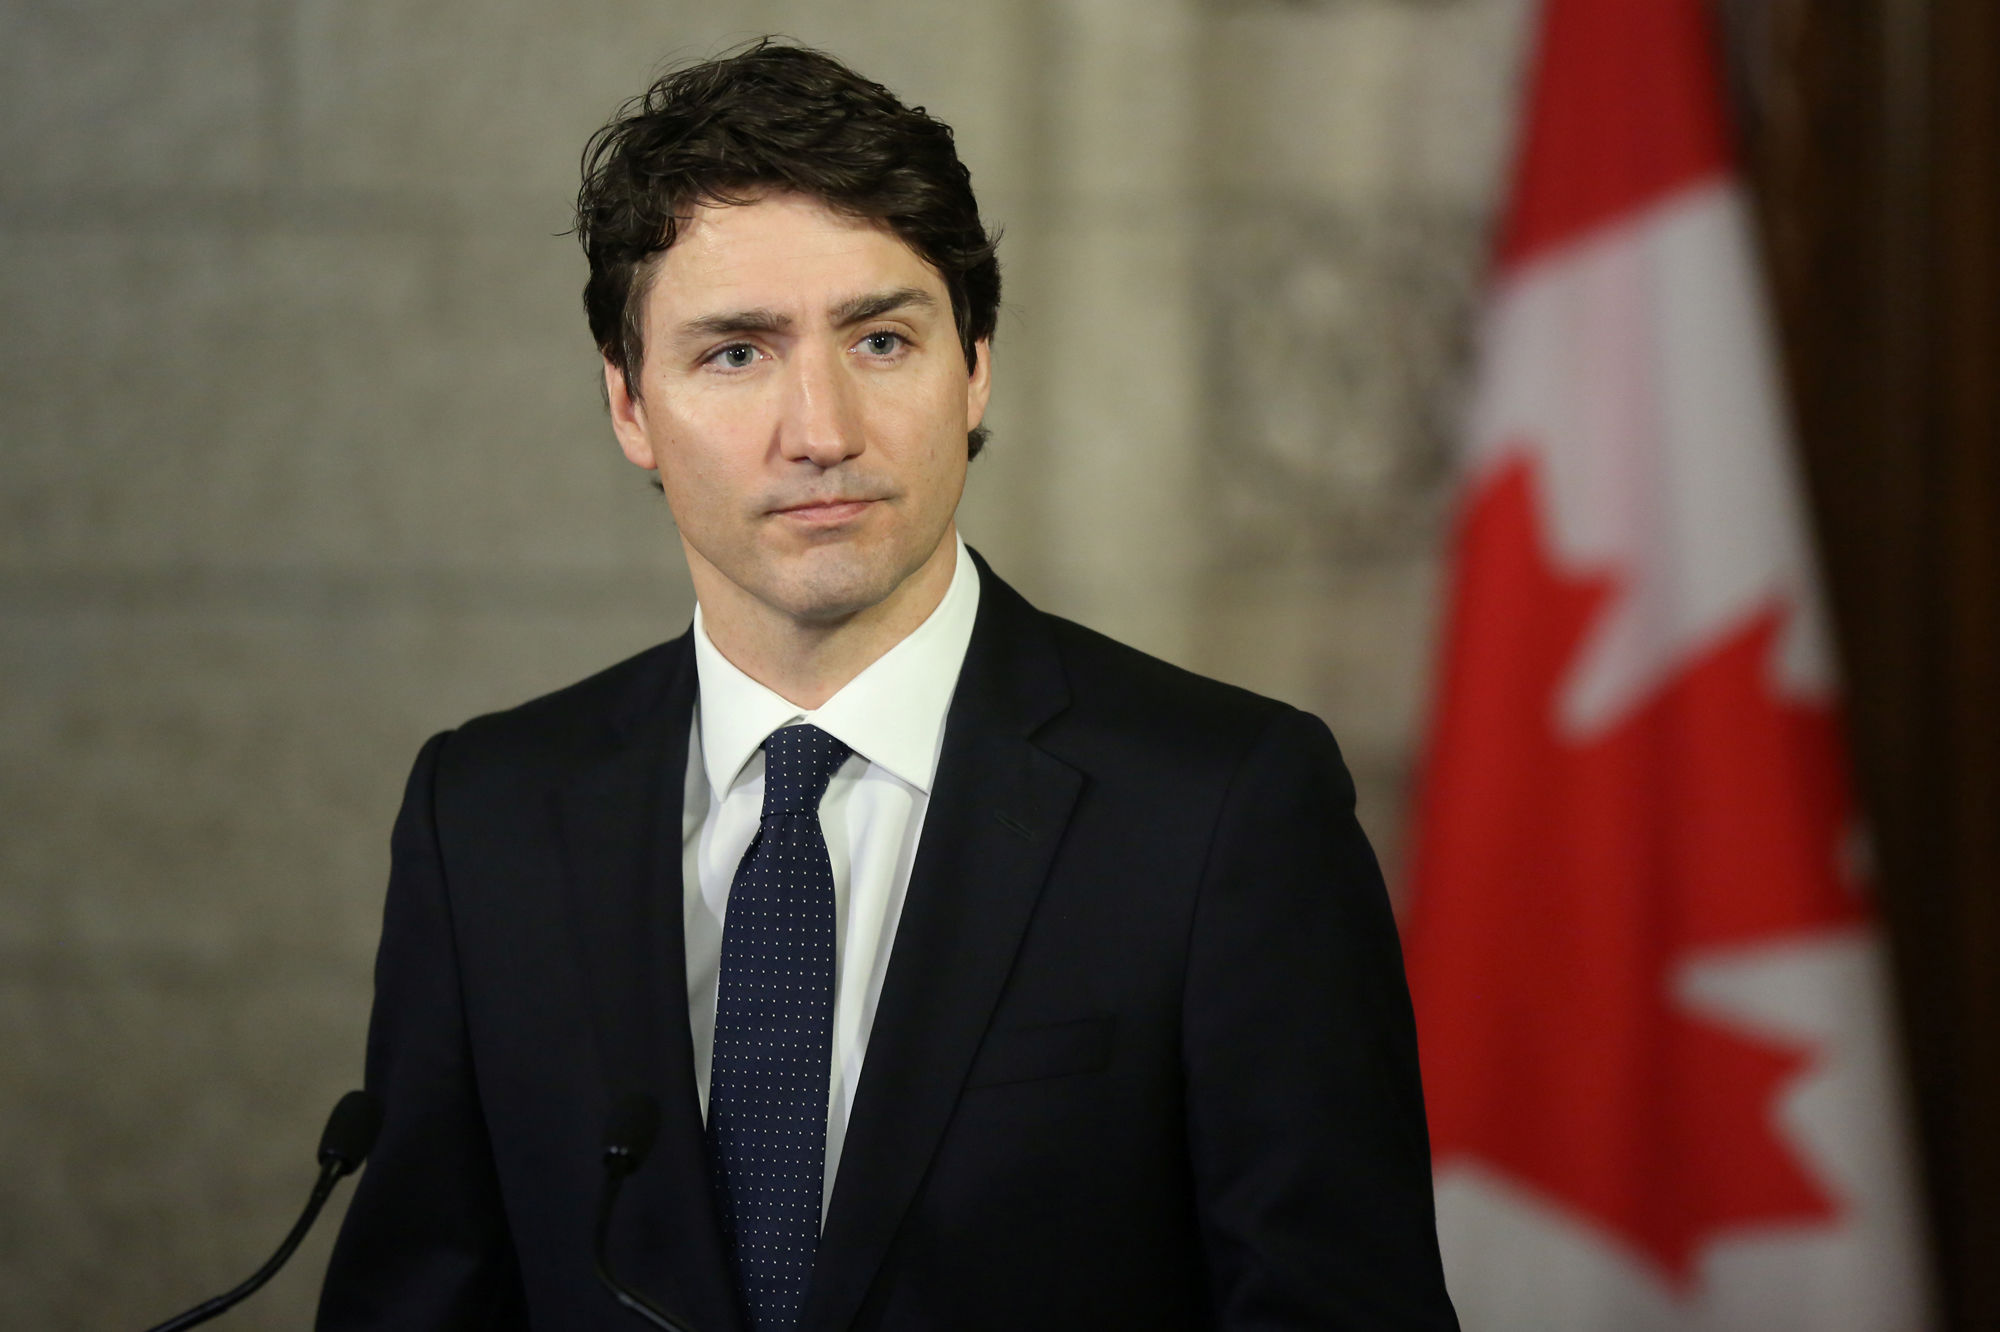 Justin Trudeau réagit aux accusations d'agression sexuelle : "Je me souviens bien de cette journée"